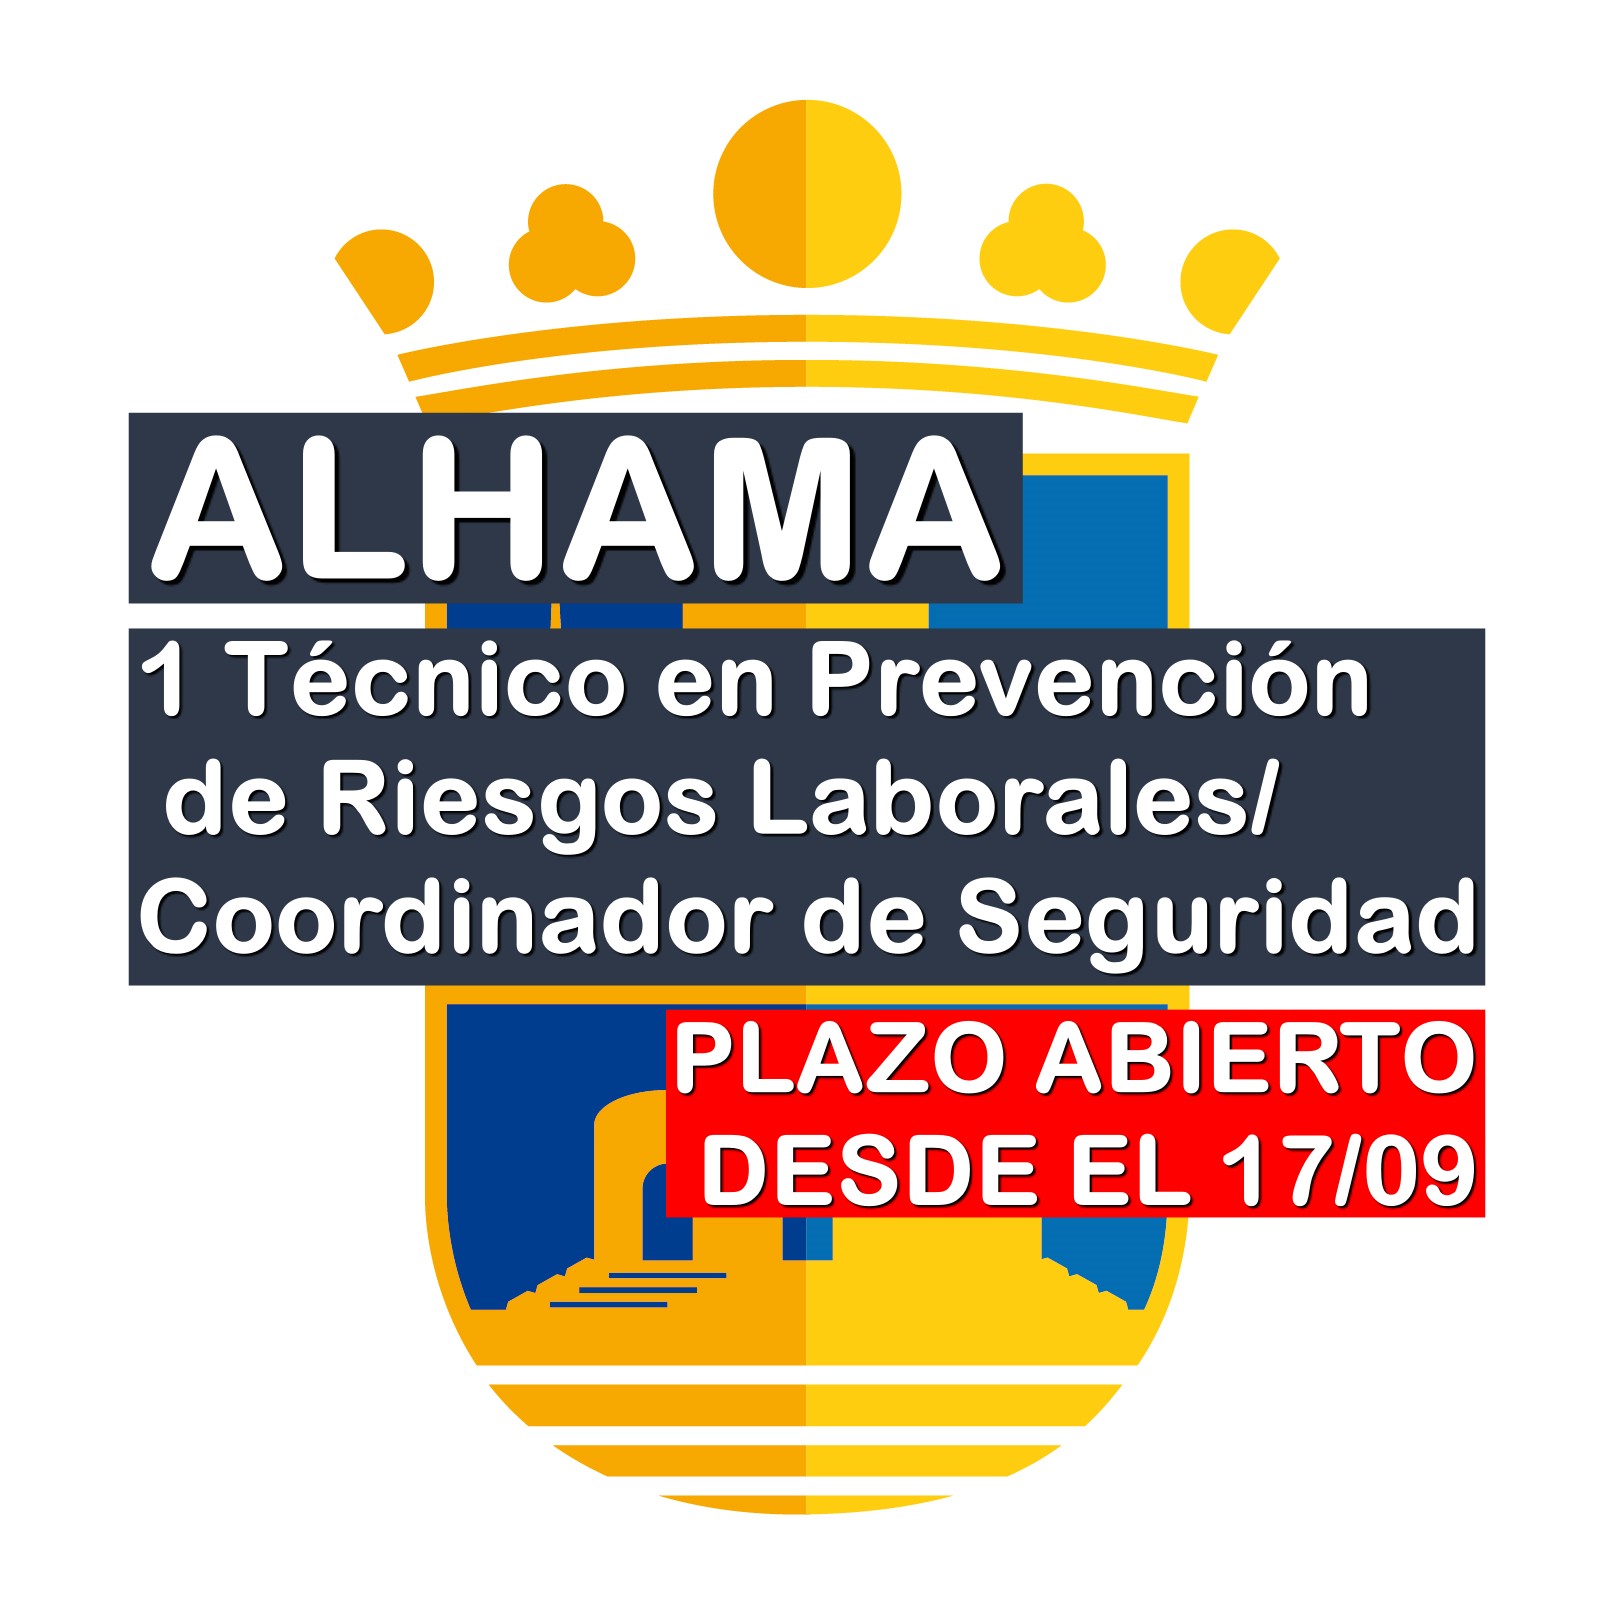 1 Técnico en Prevención de Riesgos Laborales/Coordinador de Seguridad en Alhama de Murcia